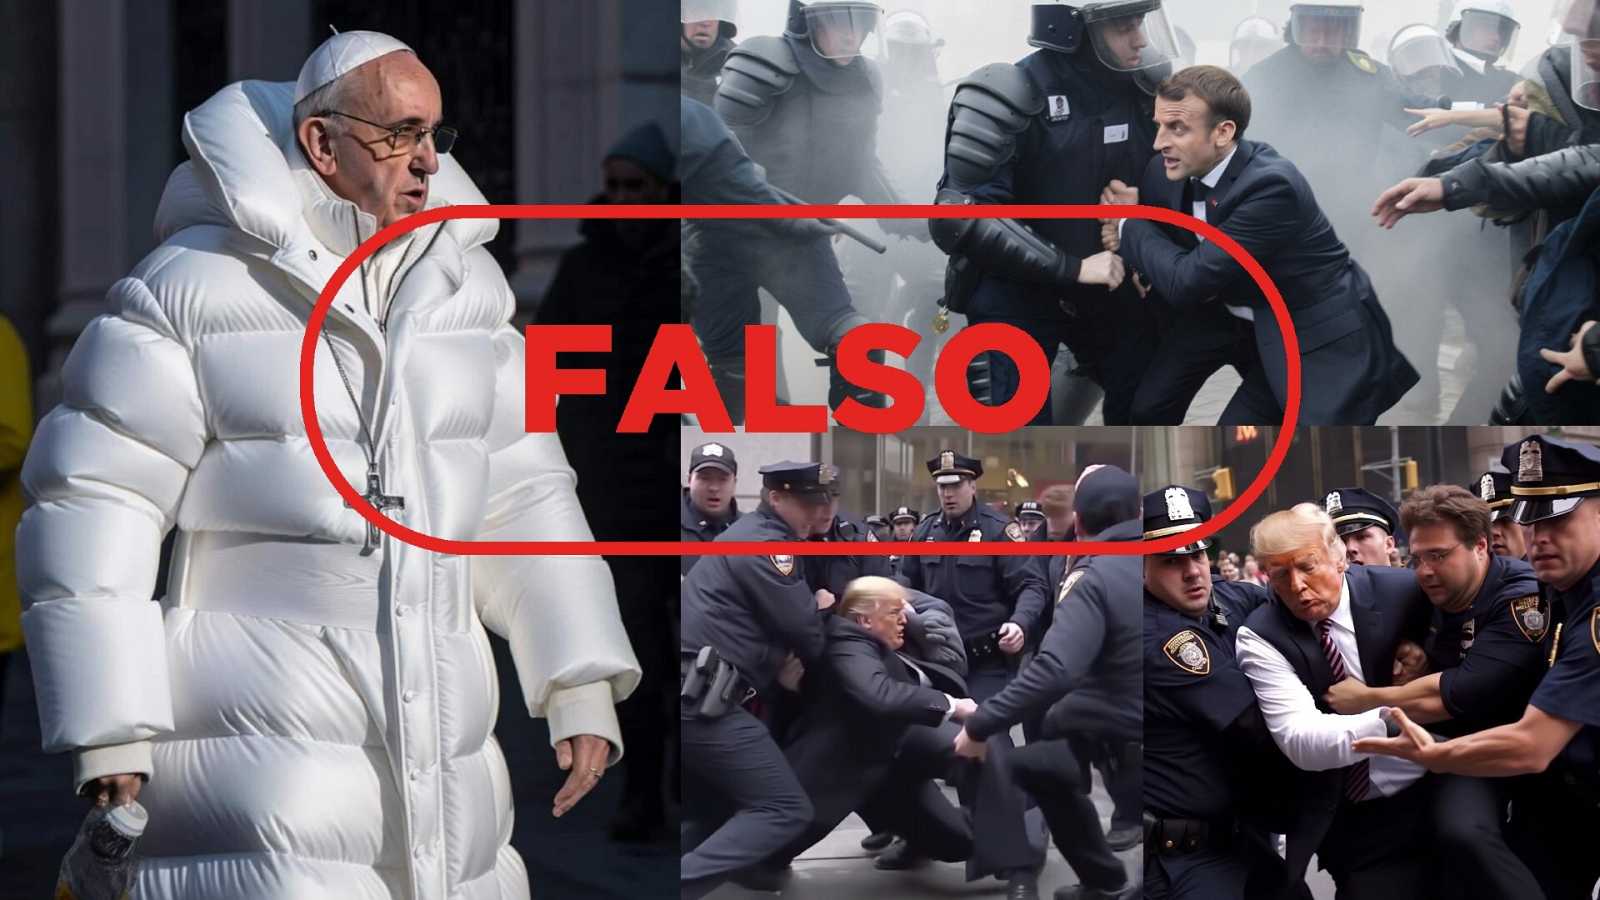 El anorak del Papa, la detención de Trump y otras imágenes falsas generadas por Inteligencia Artificial: claves para detectarlas